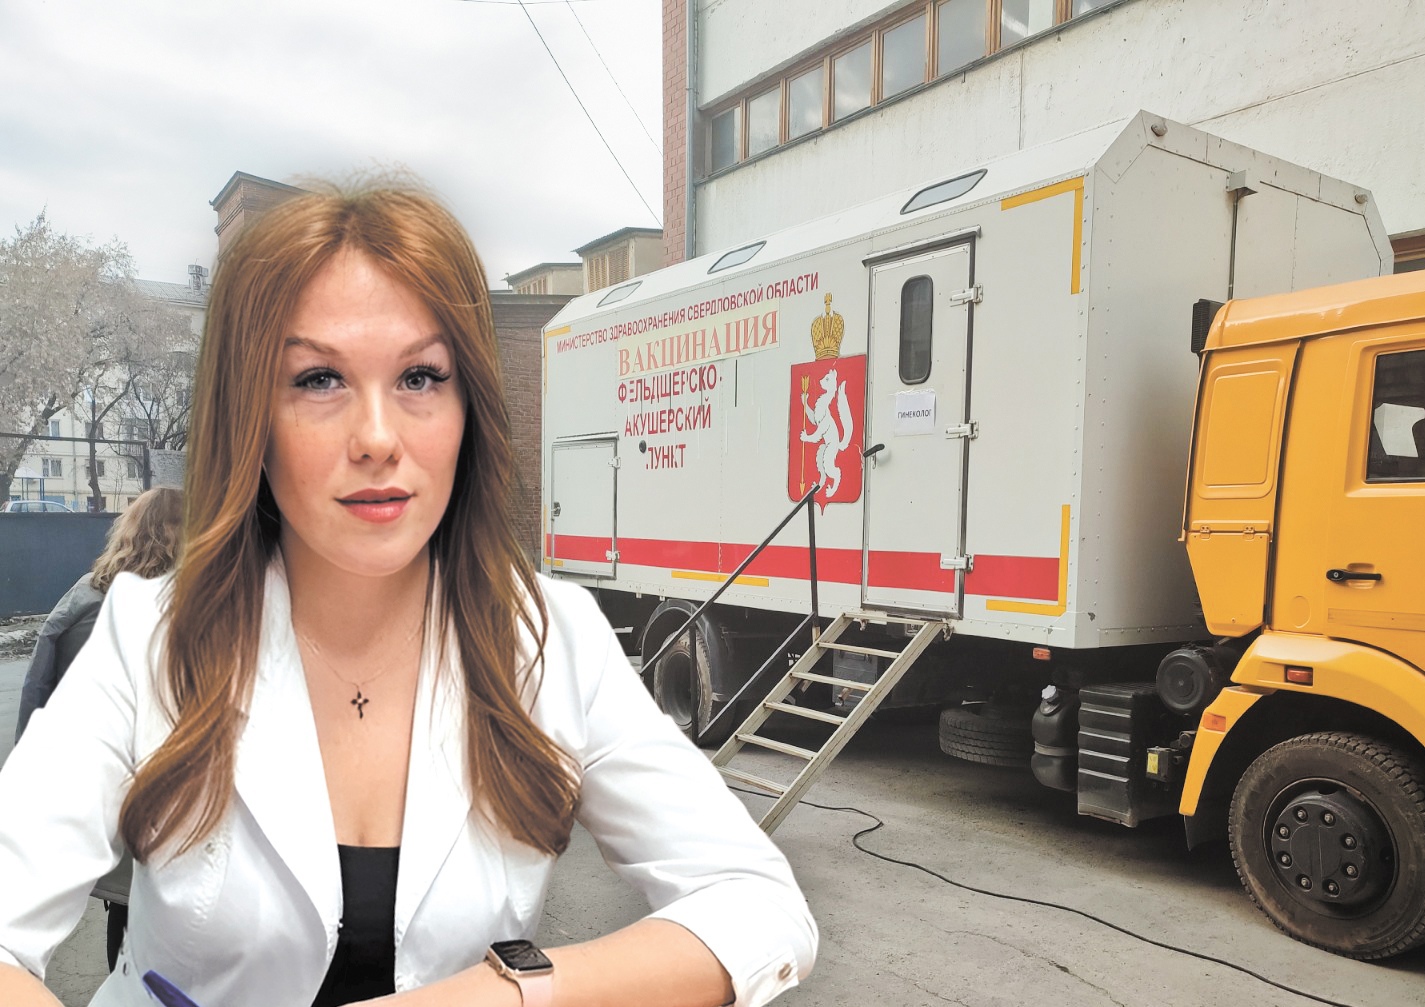 Руководитель Регионального центра организации первичной медико-санитарной помощи Свердловской области Дарья Игоревна Белова